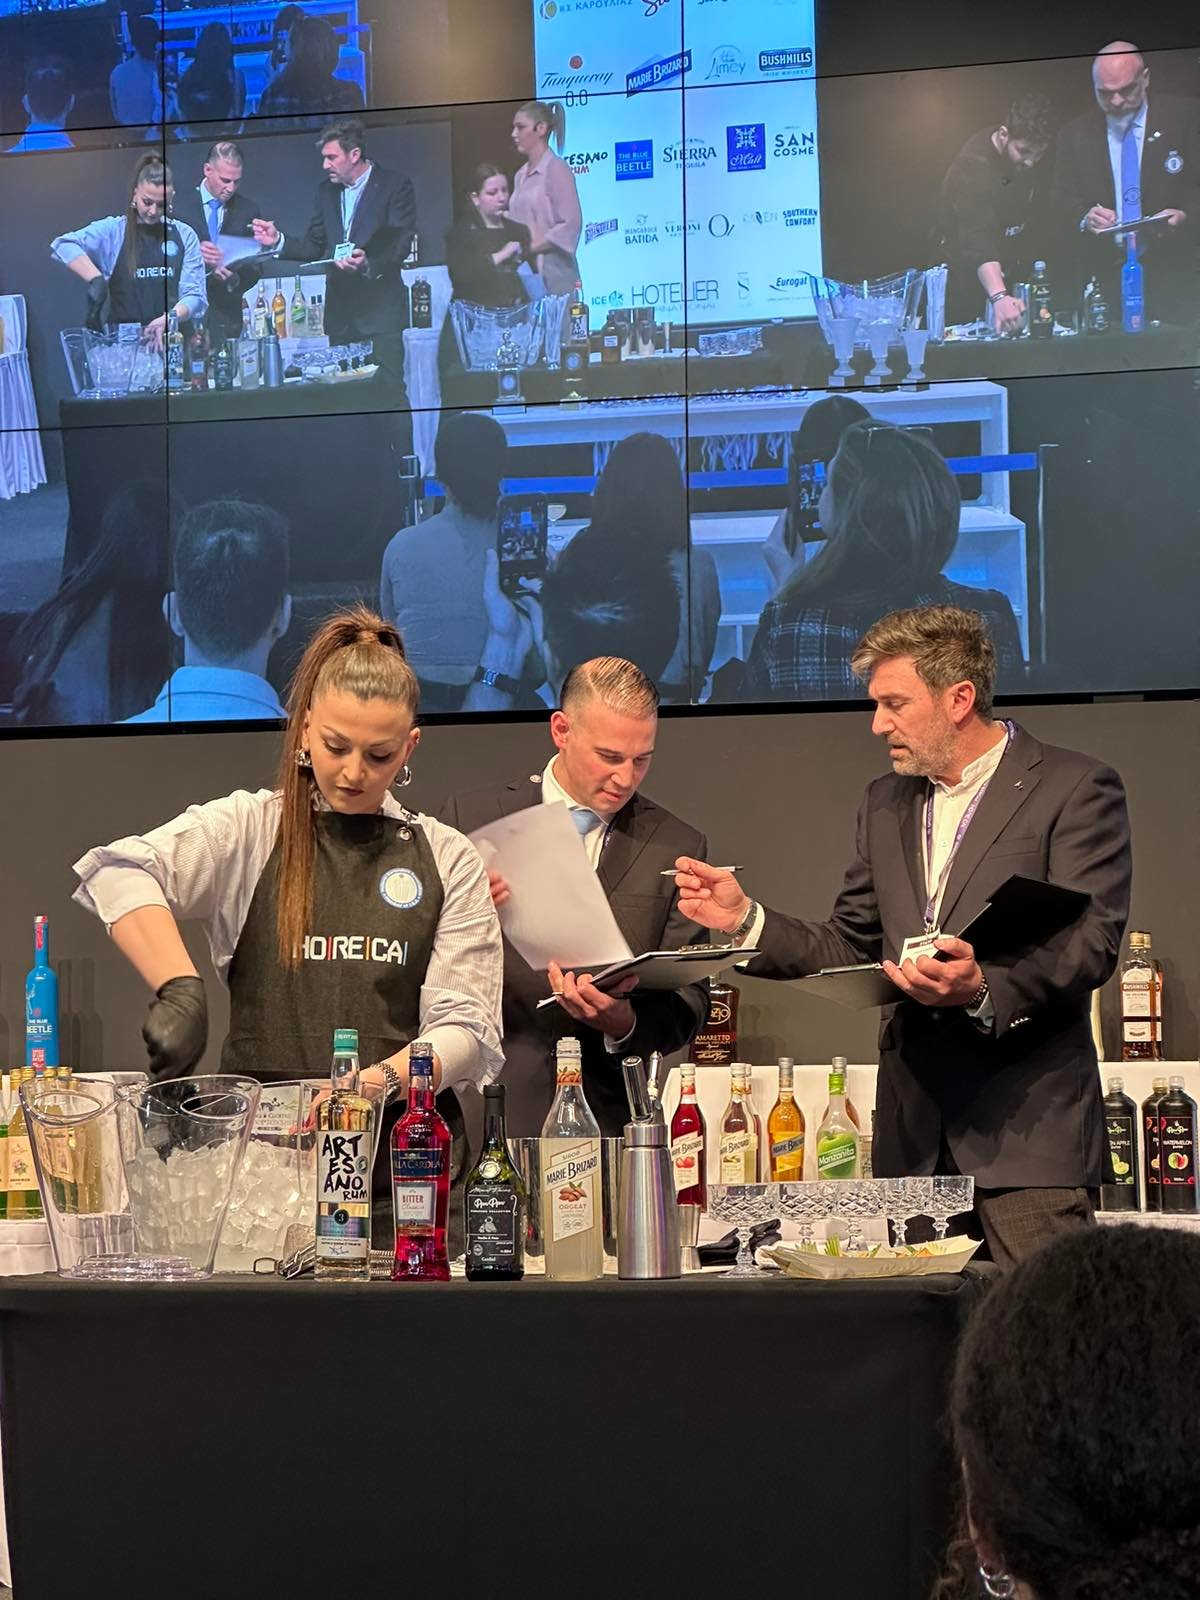 Δύο βραβεία κορυφαίας δημιουργίας για την εξαιρετική bartender του Vermut, Σταυρούλα Μερλίγκα, στο μεγάλο event Horeca στην Αθήνα – ΦΩΤΟ&ΒΙΝΤΕΟ